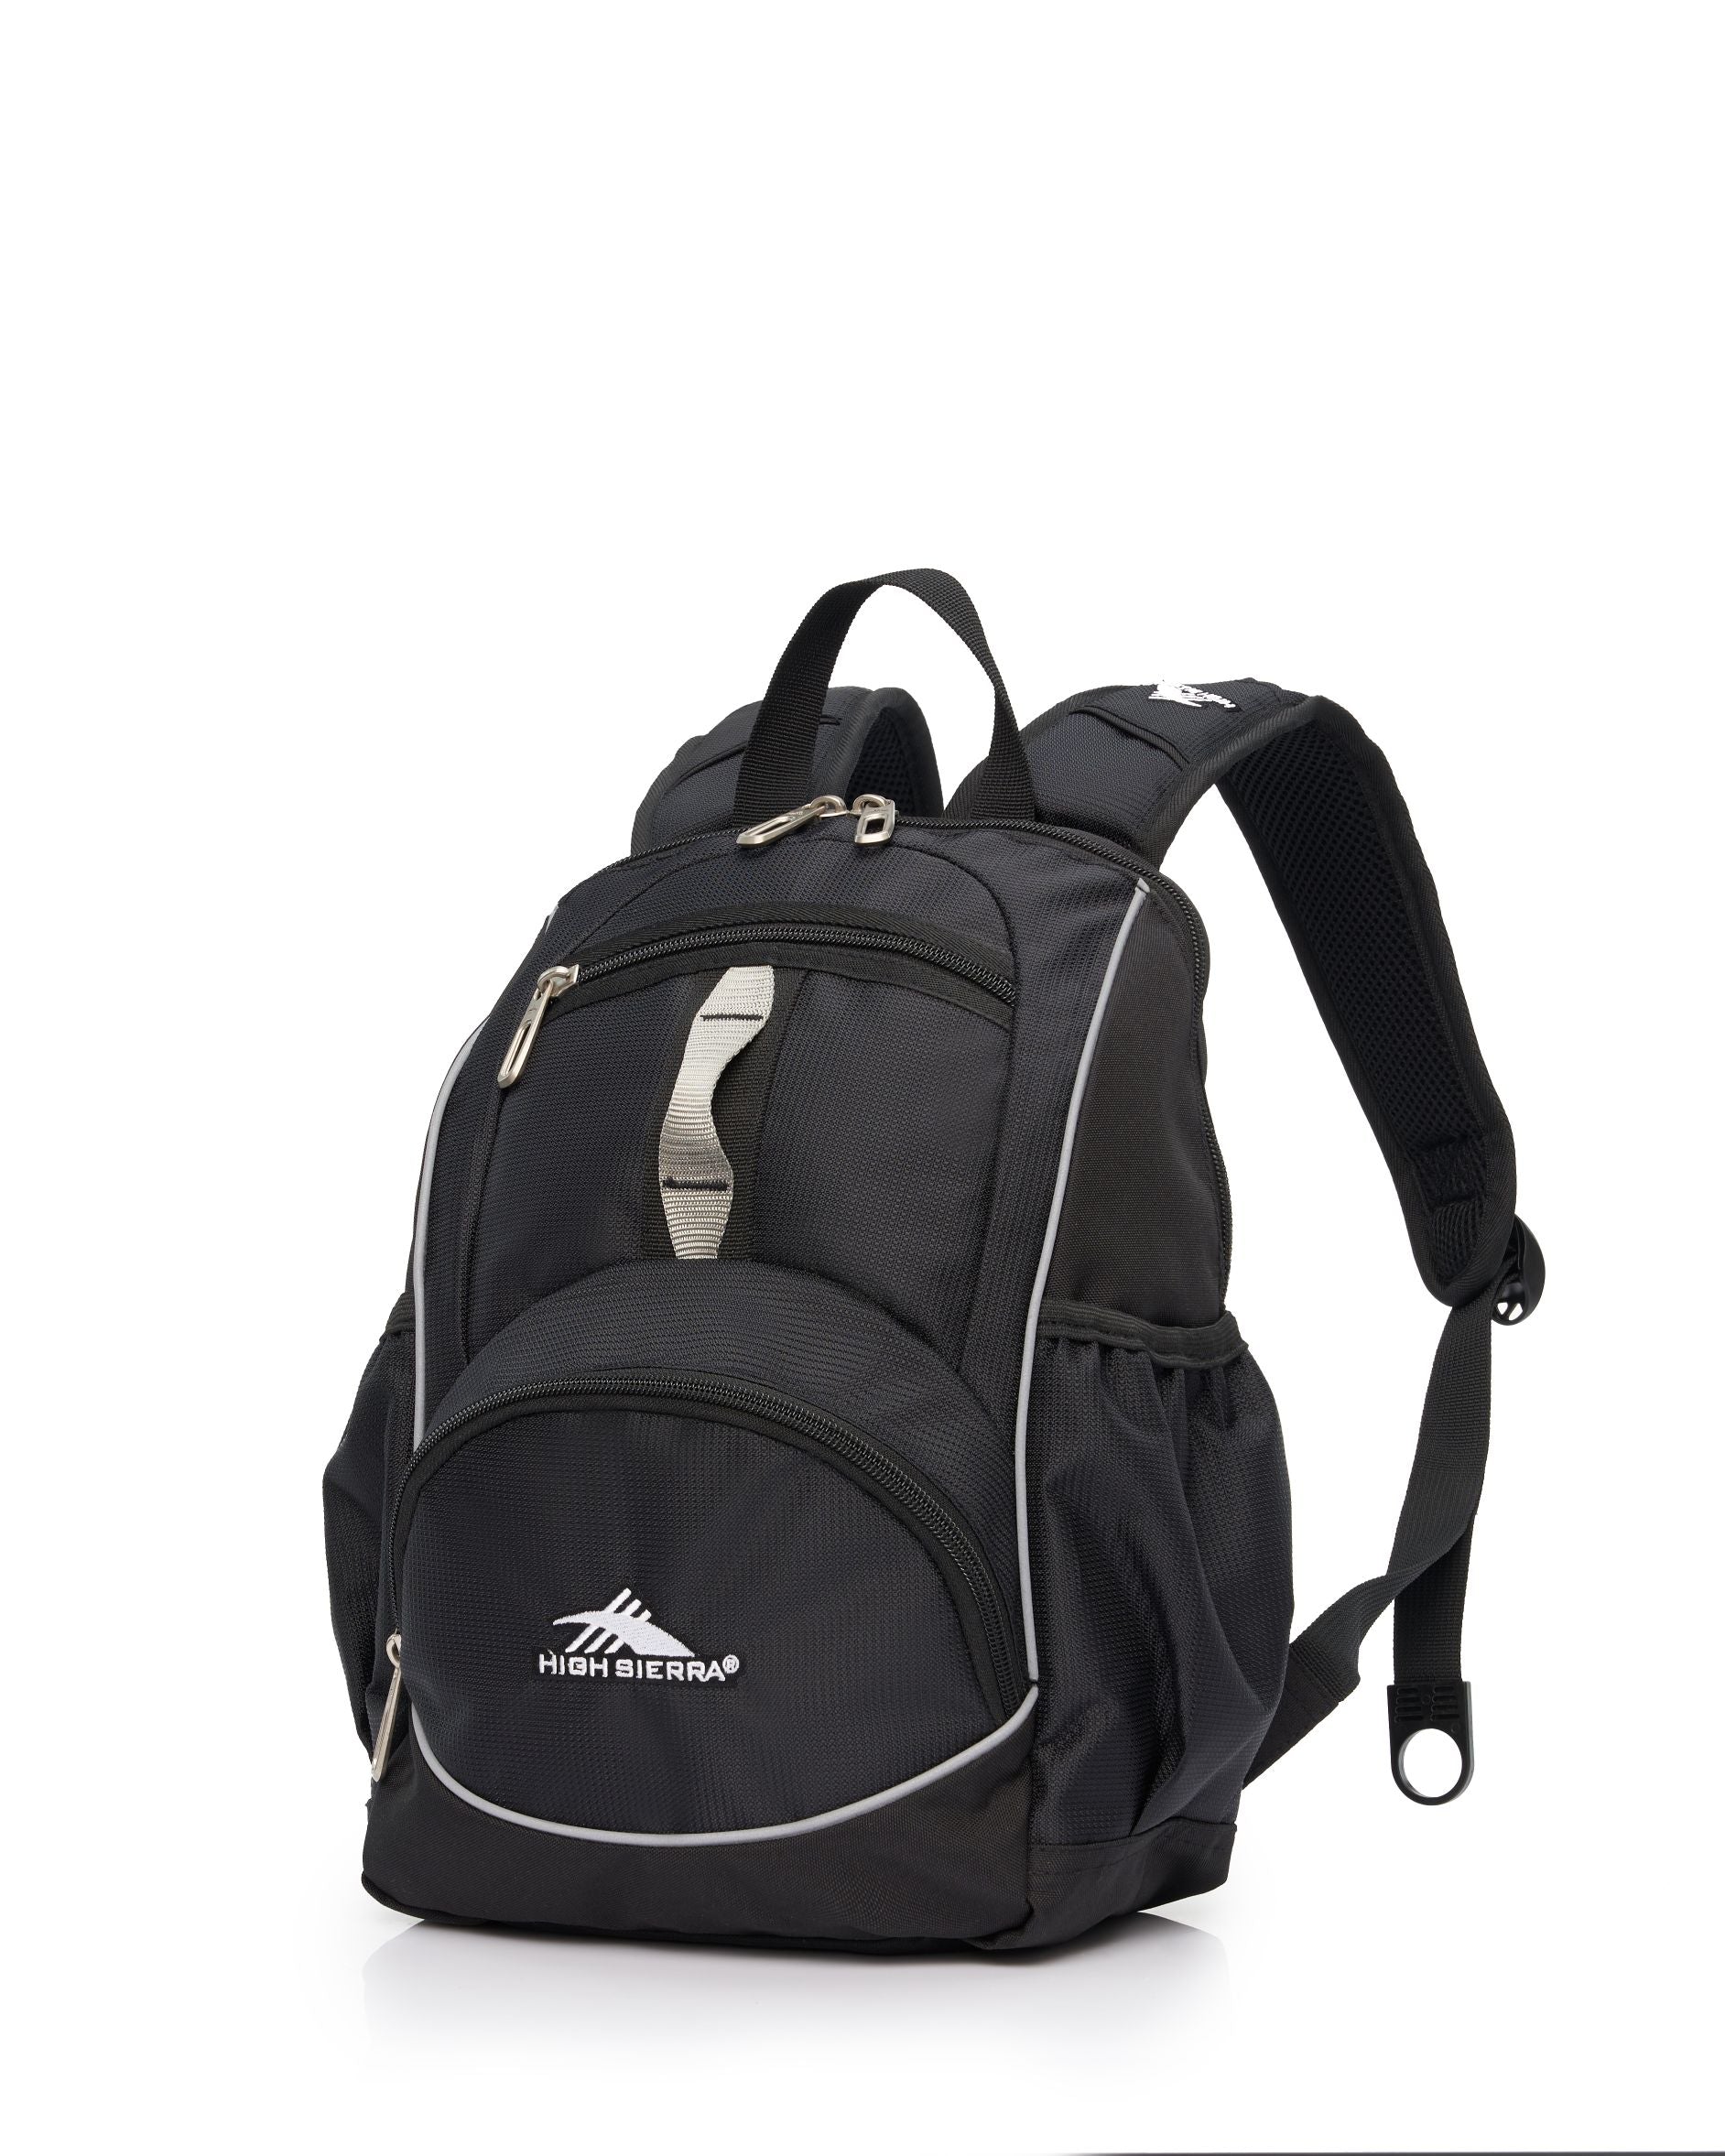 High Sierra - Mini Backpack 2.0 - Black/Silver-1